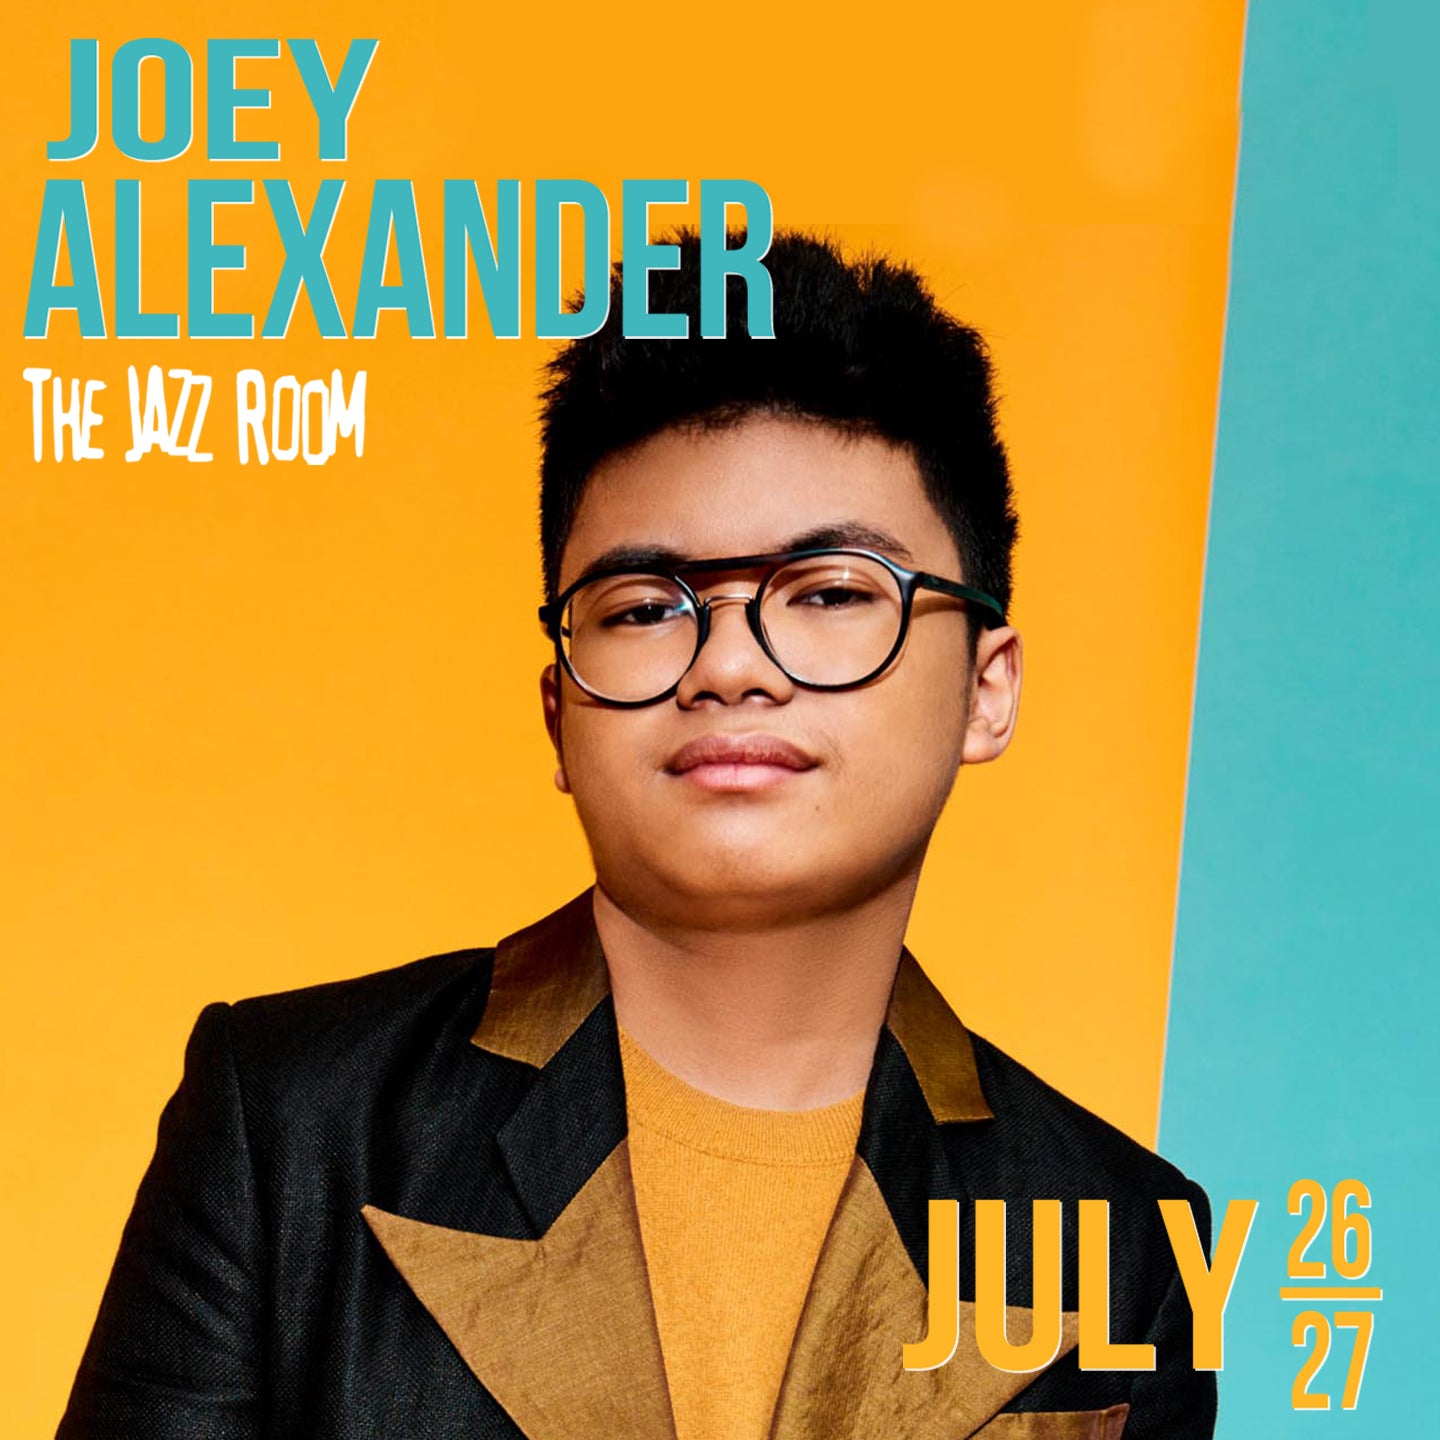 Jazz Room Presents: Joey Alexander